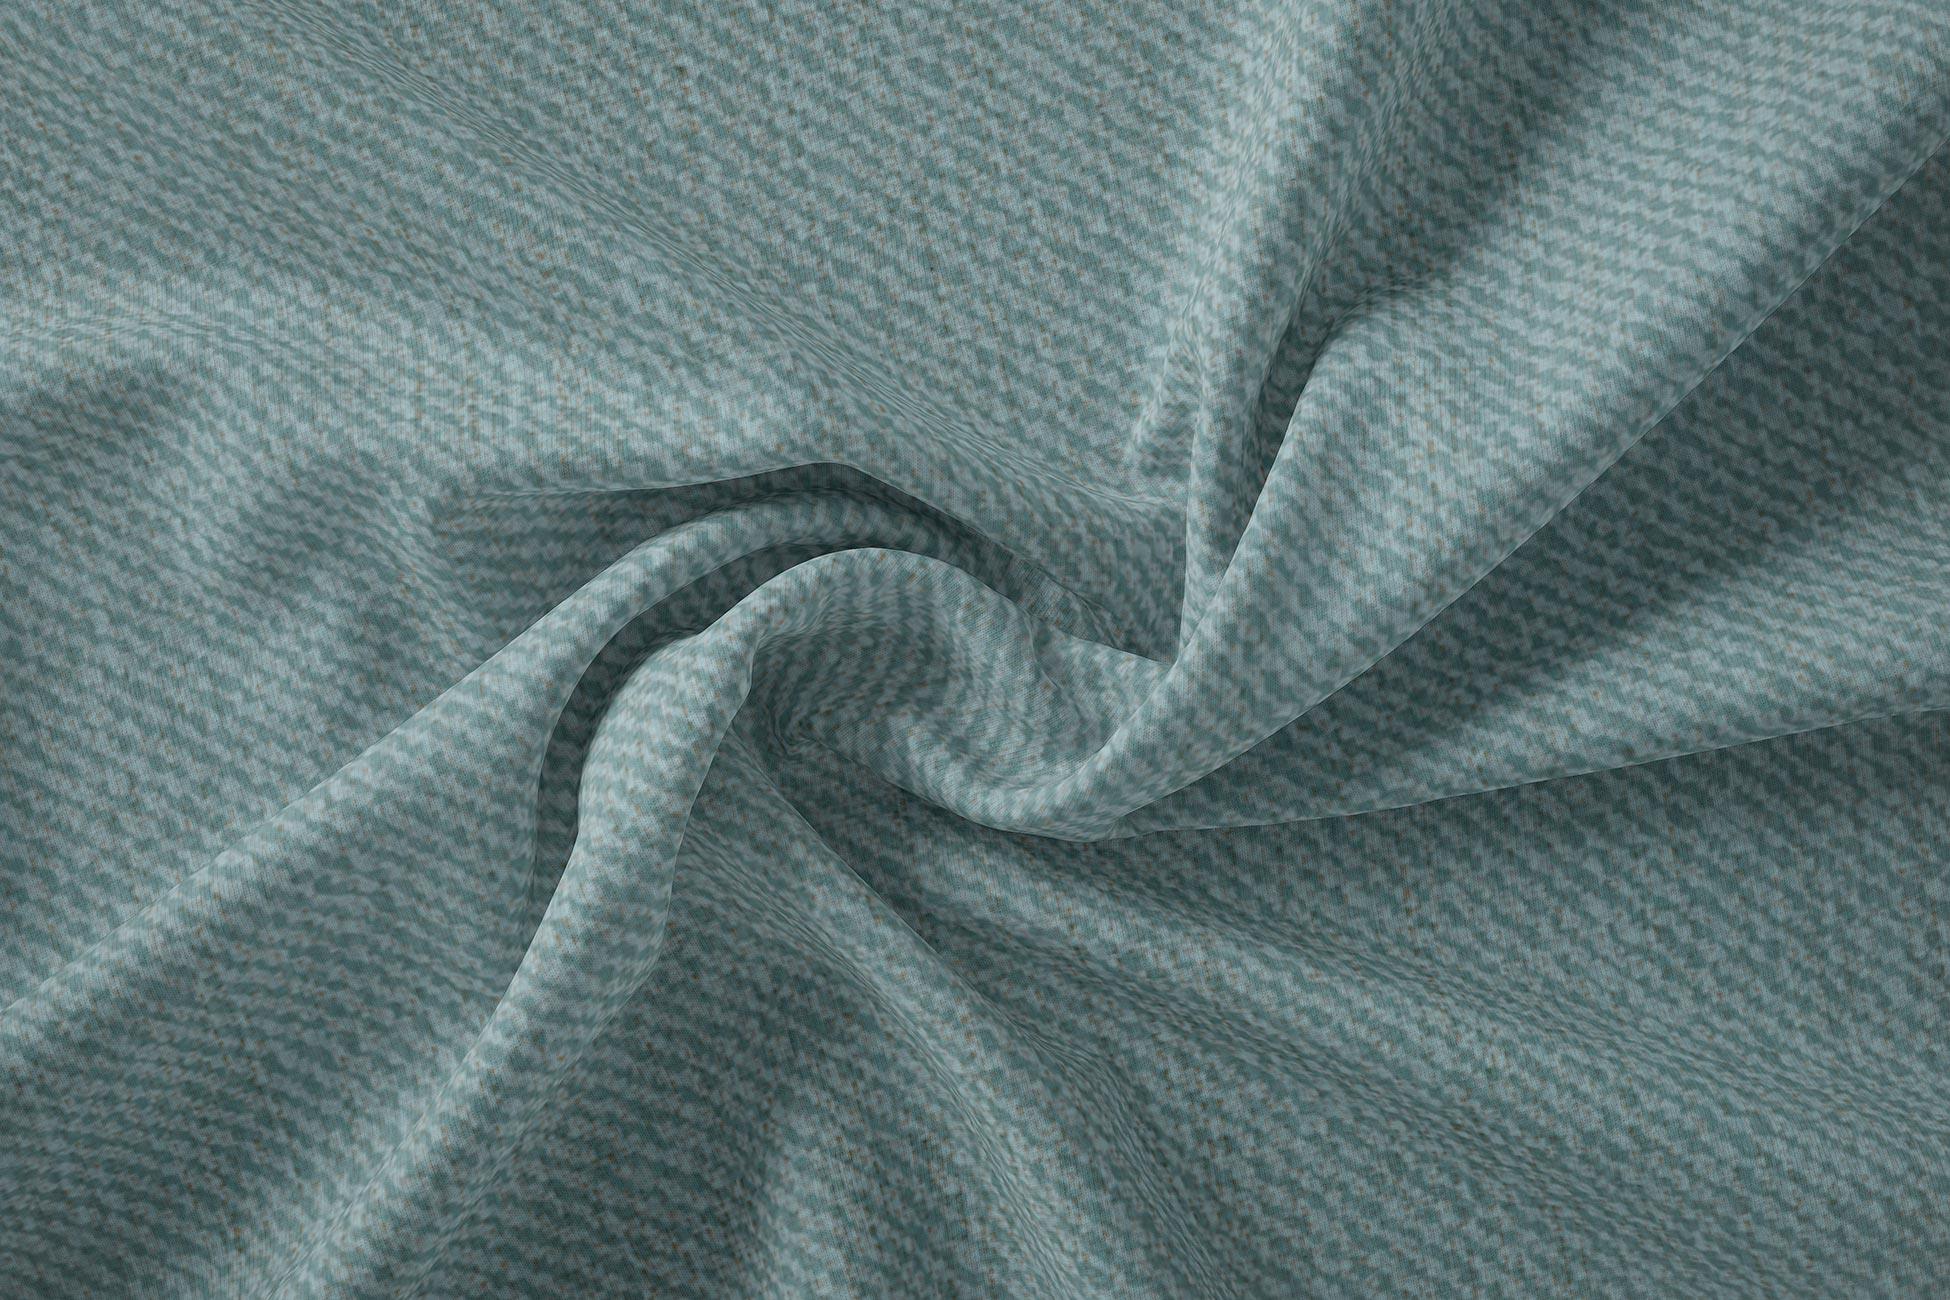 Pelmet Curtain P35 - Karen Fabrics